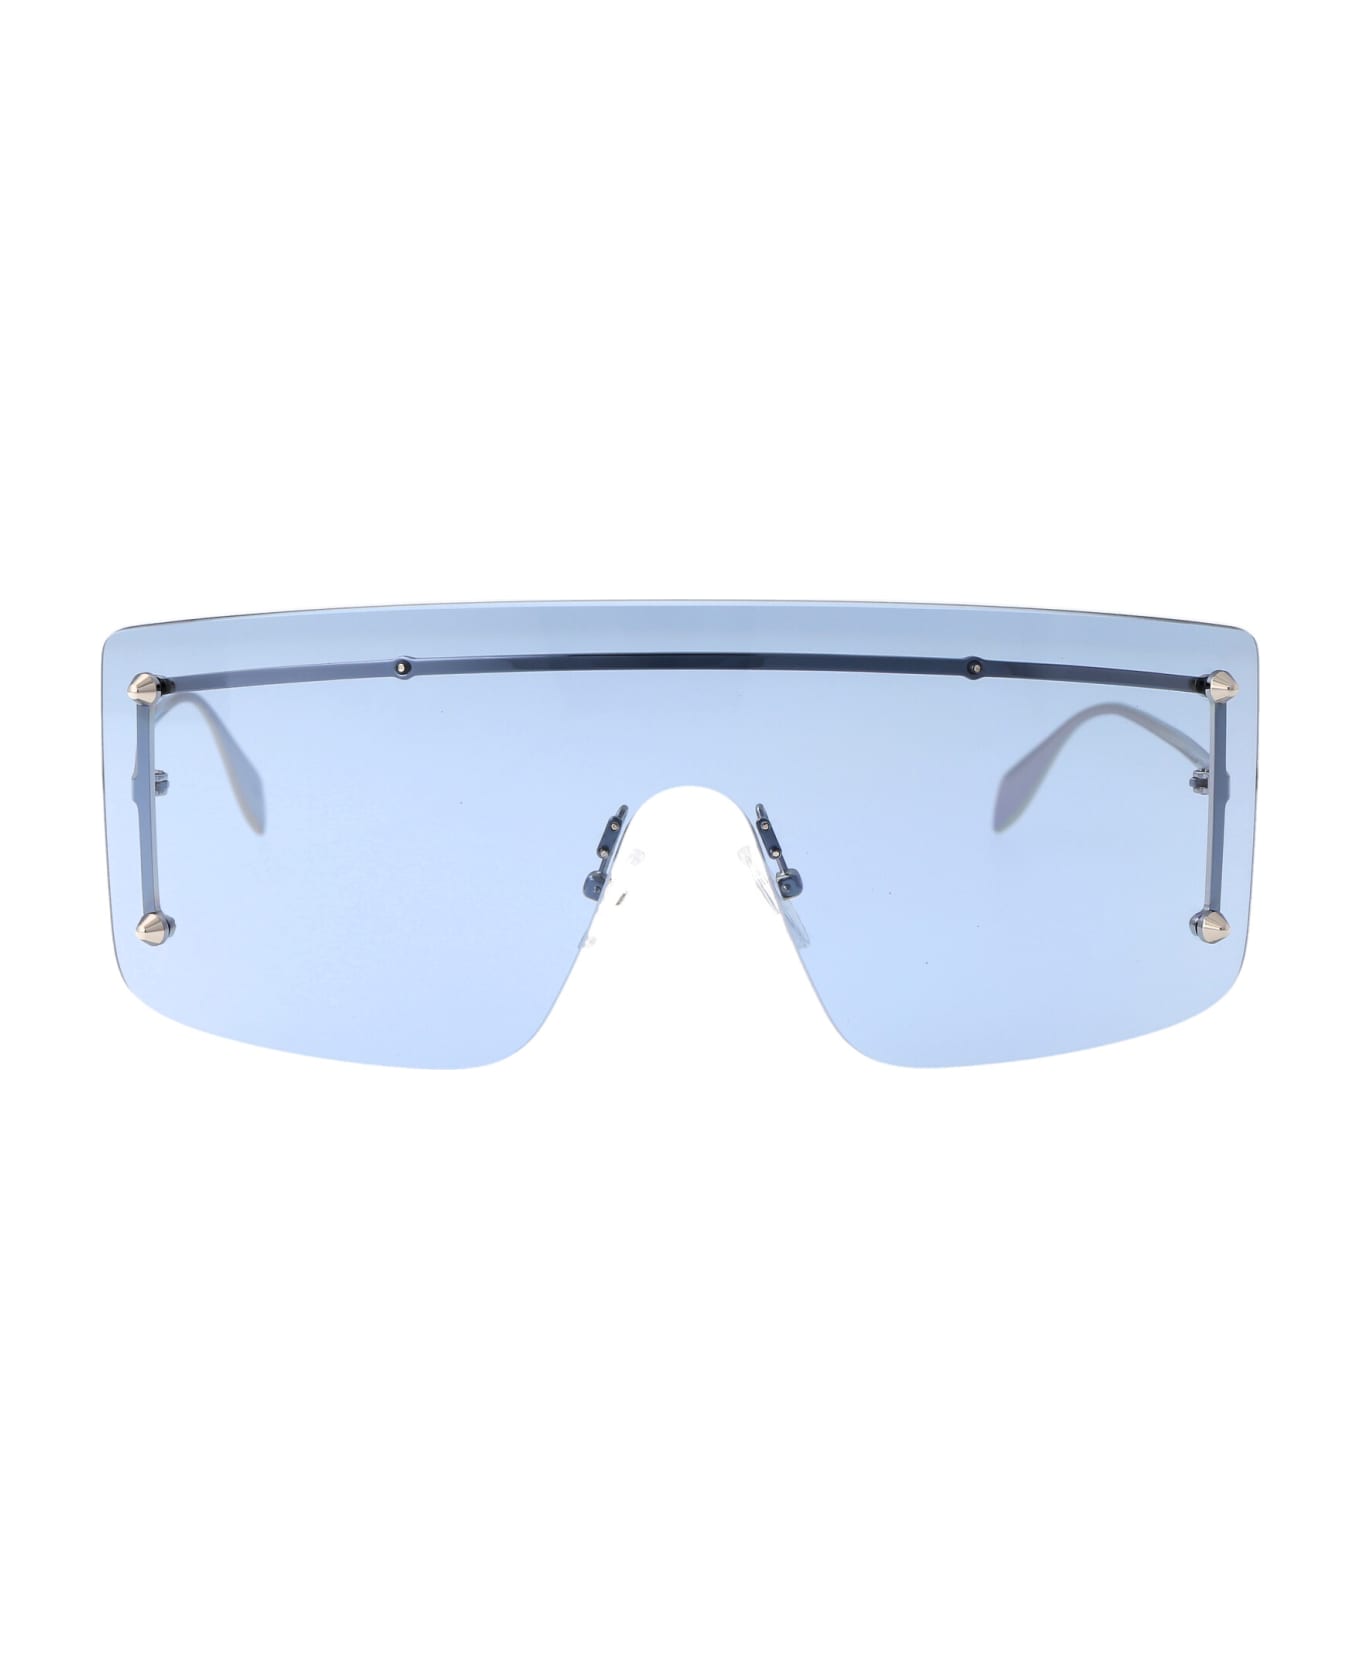 Alexander McQueen Eyewear Am0412s Sunglasses - 004 SILVER SILVER LIGHT BLUE